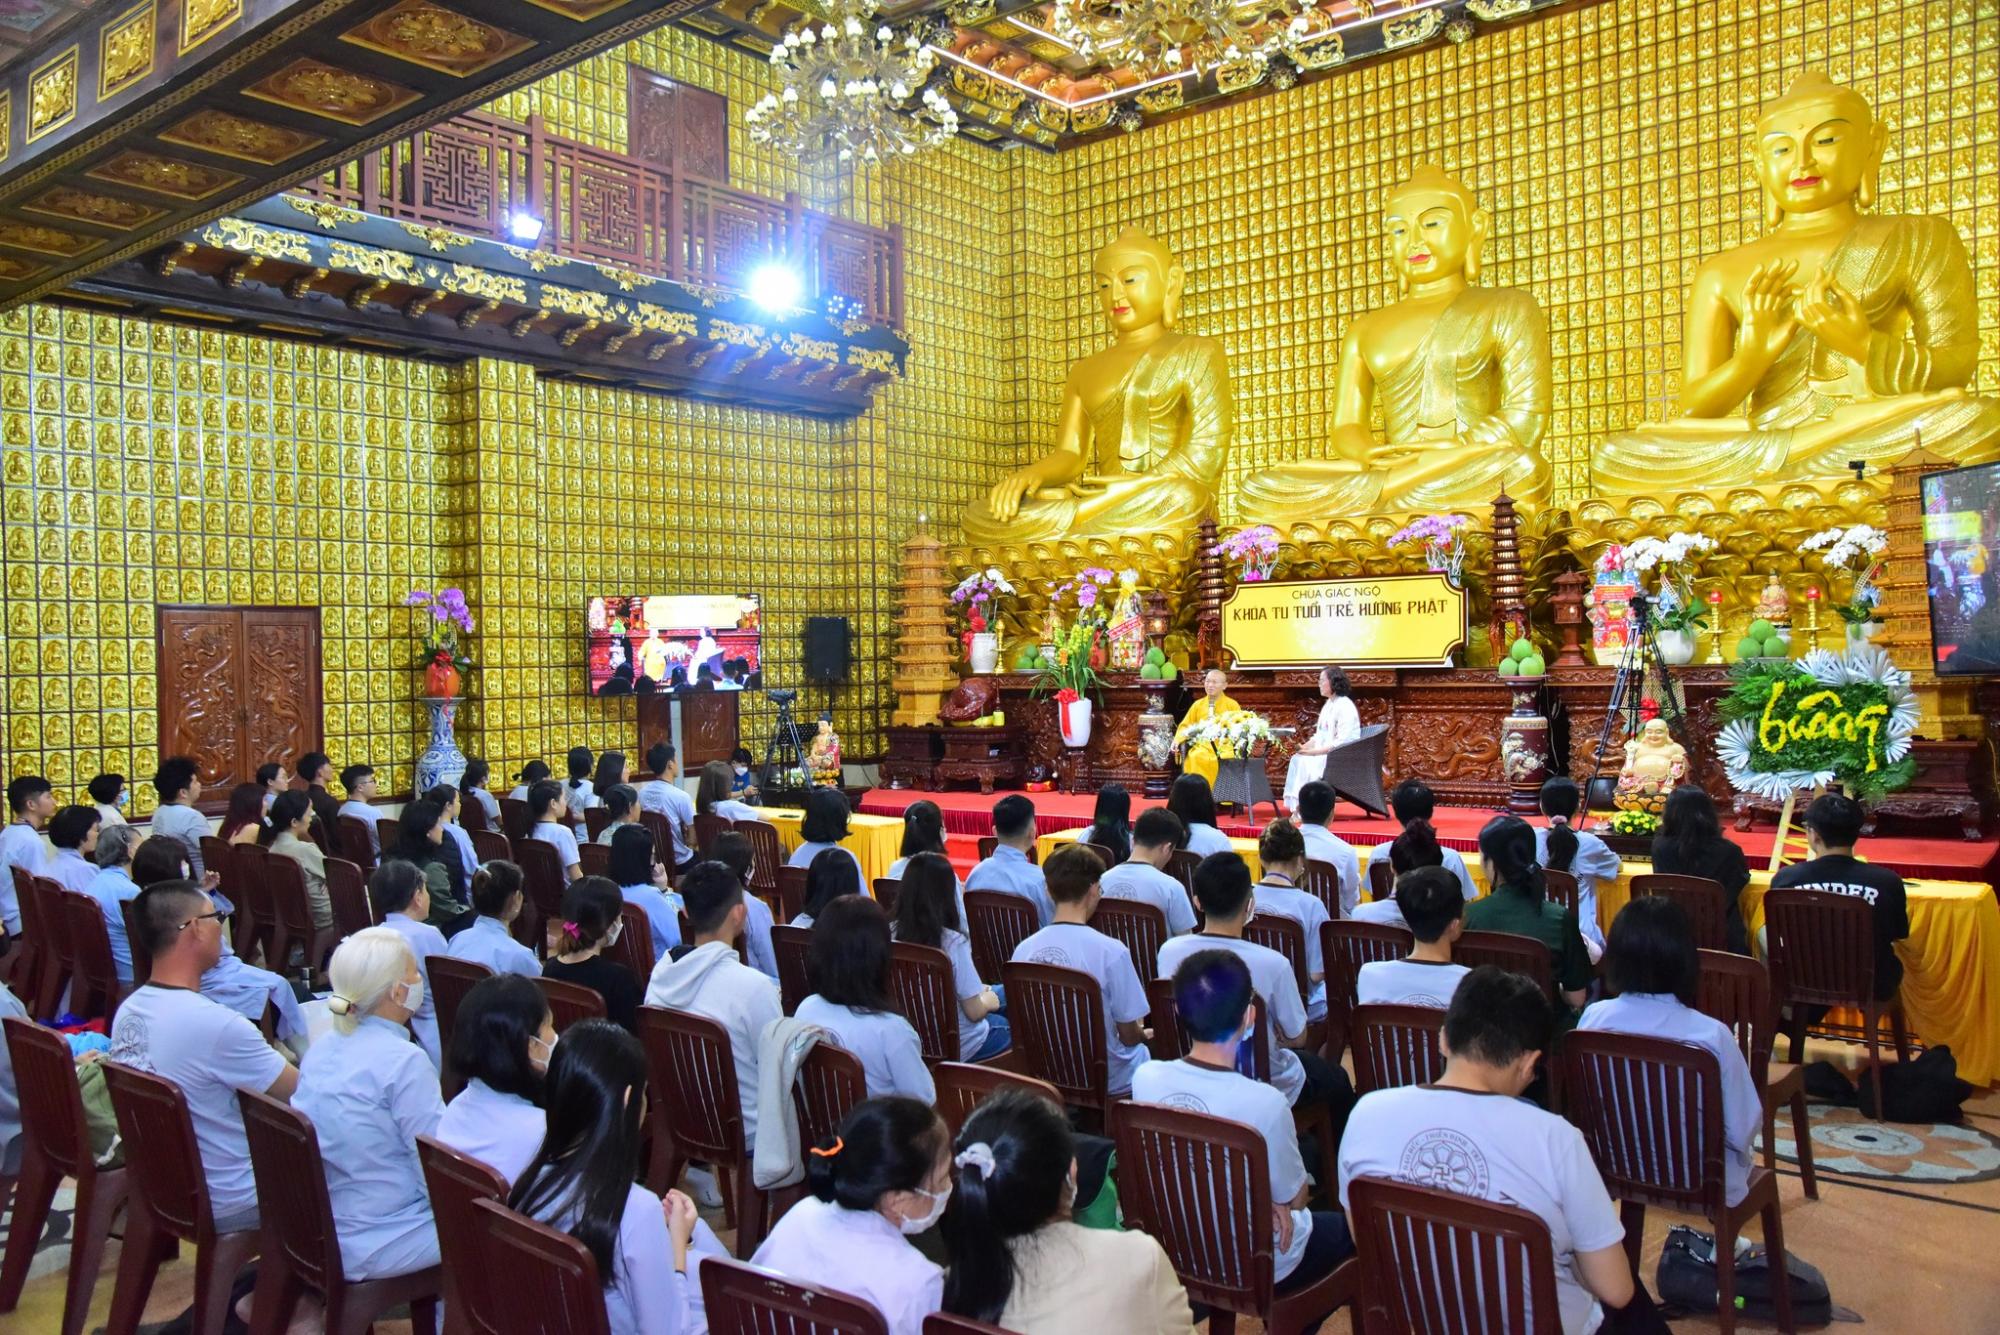 Khóa tu tuổi trẻ hướng Phật cuối cùng của năm và những điều cần lưu ý trước thềm năm mới